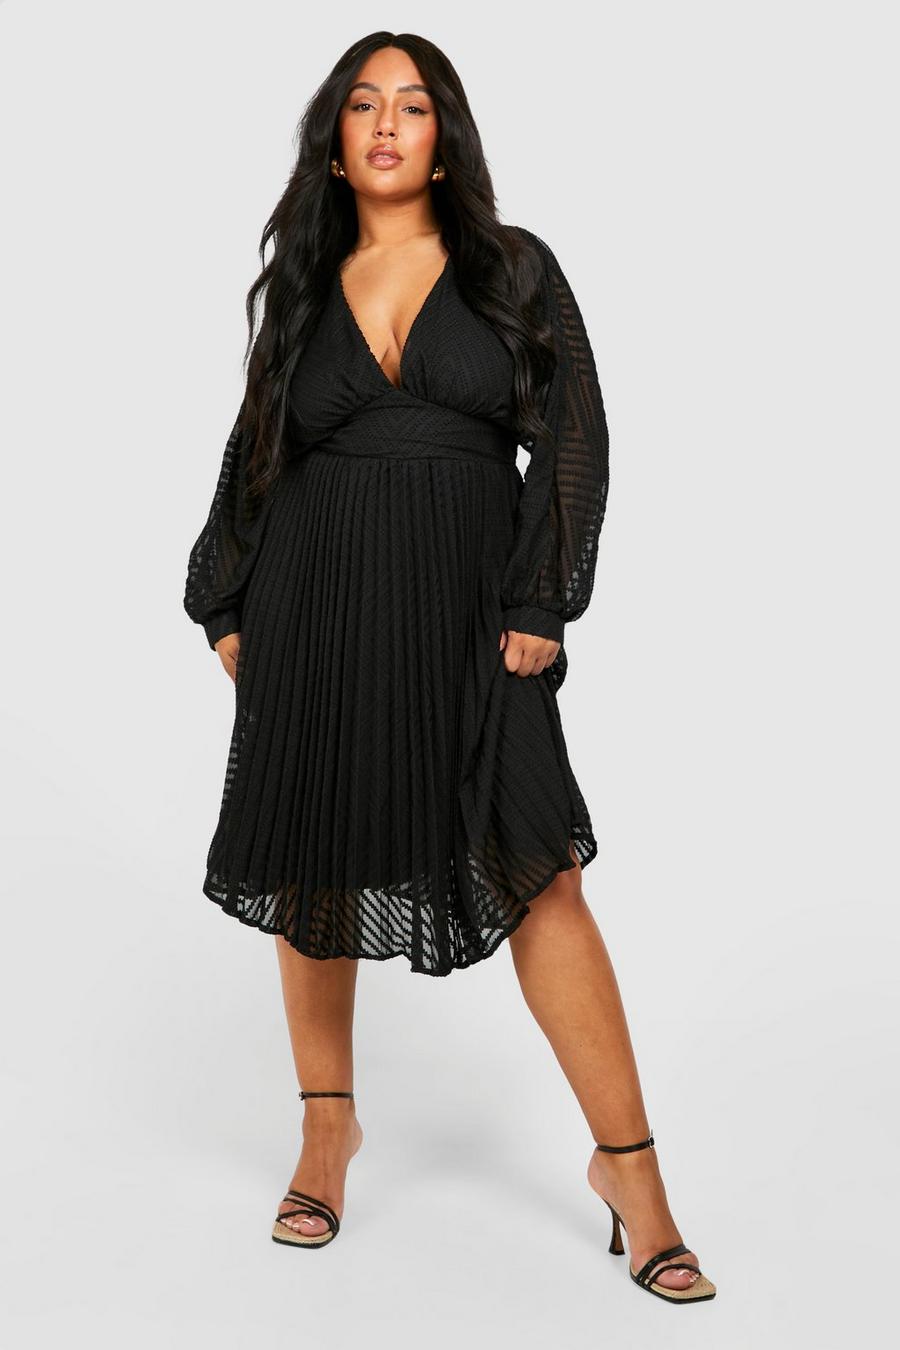 שחור negro שמלת סקייטר מידי שיפון עם טקסטורה למידות גדולות